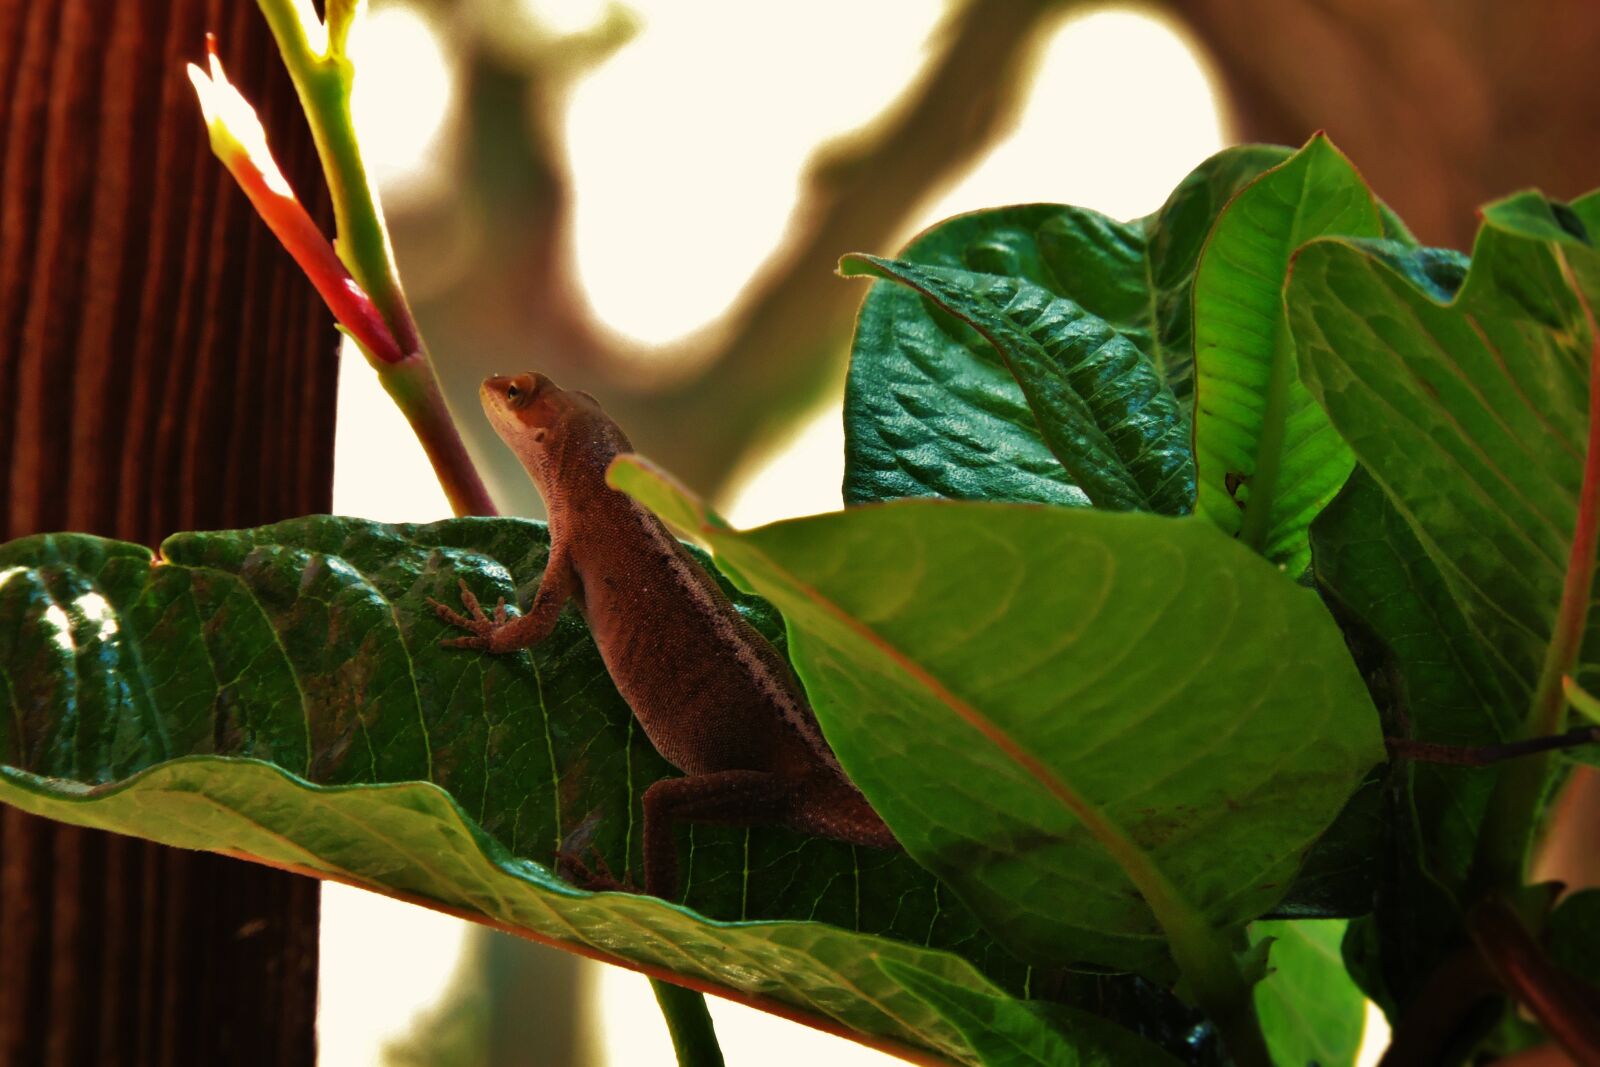 Nikon Coolpix P600 sample photo. Lizard, nature, reptile photography